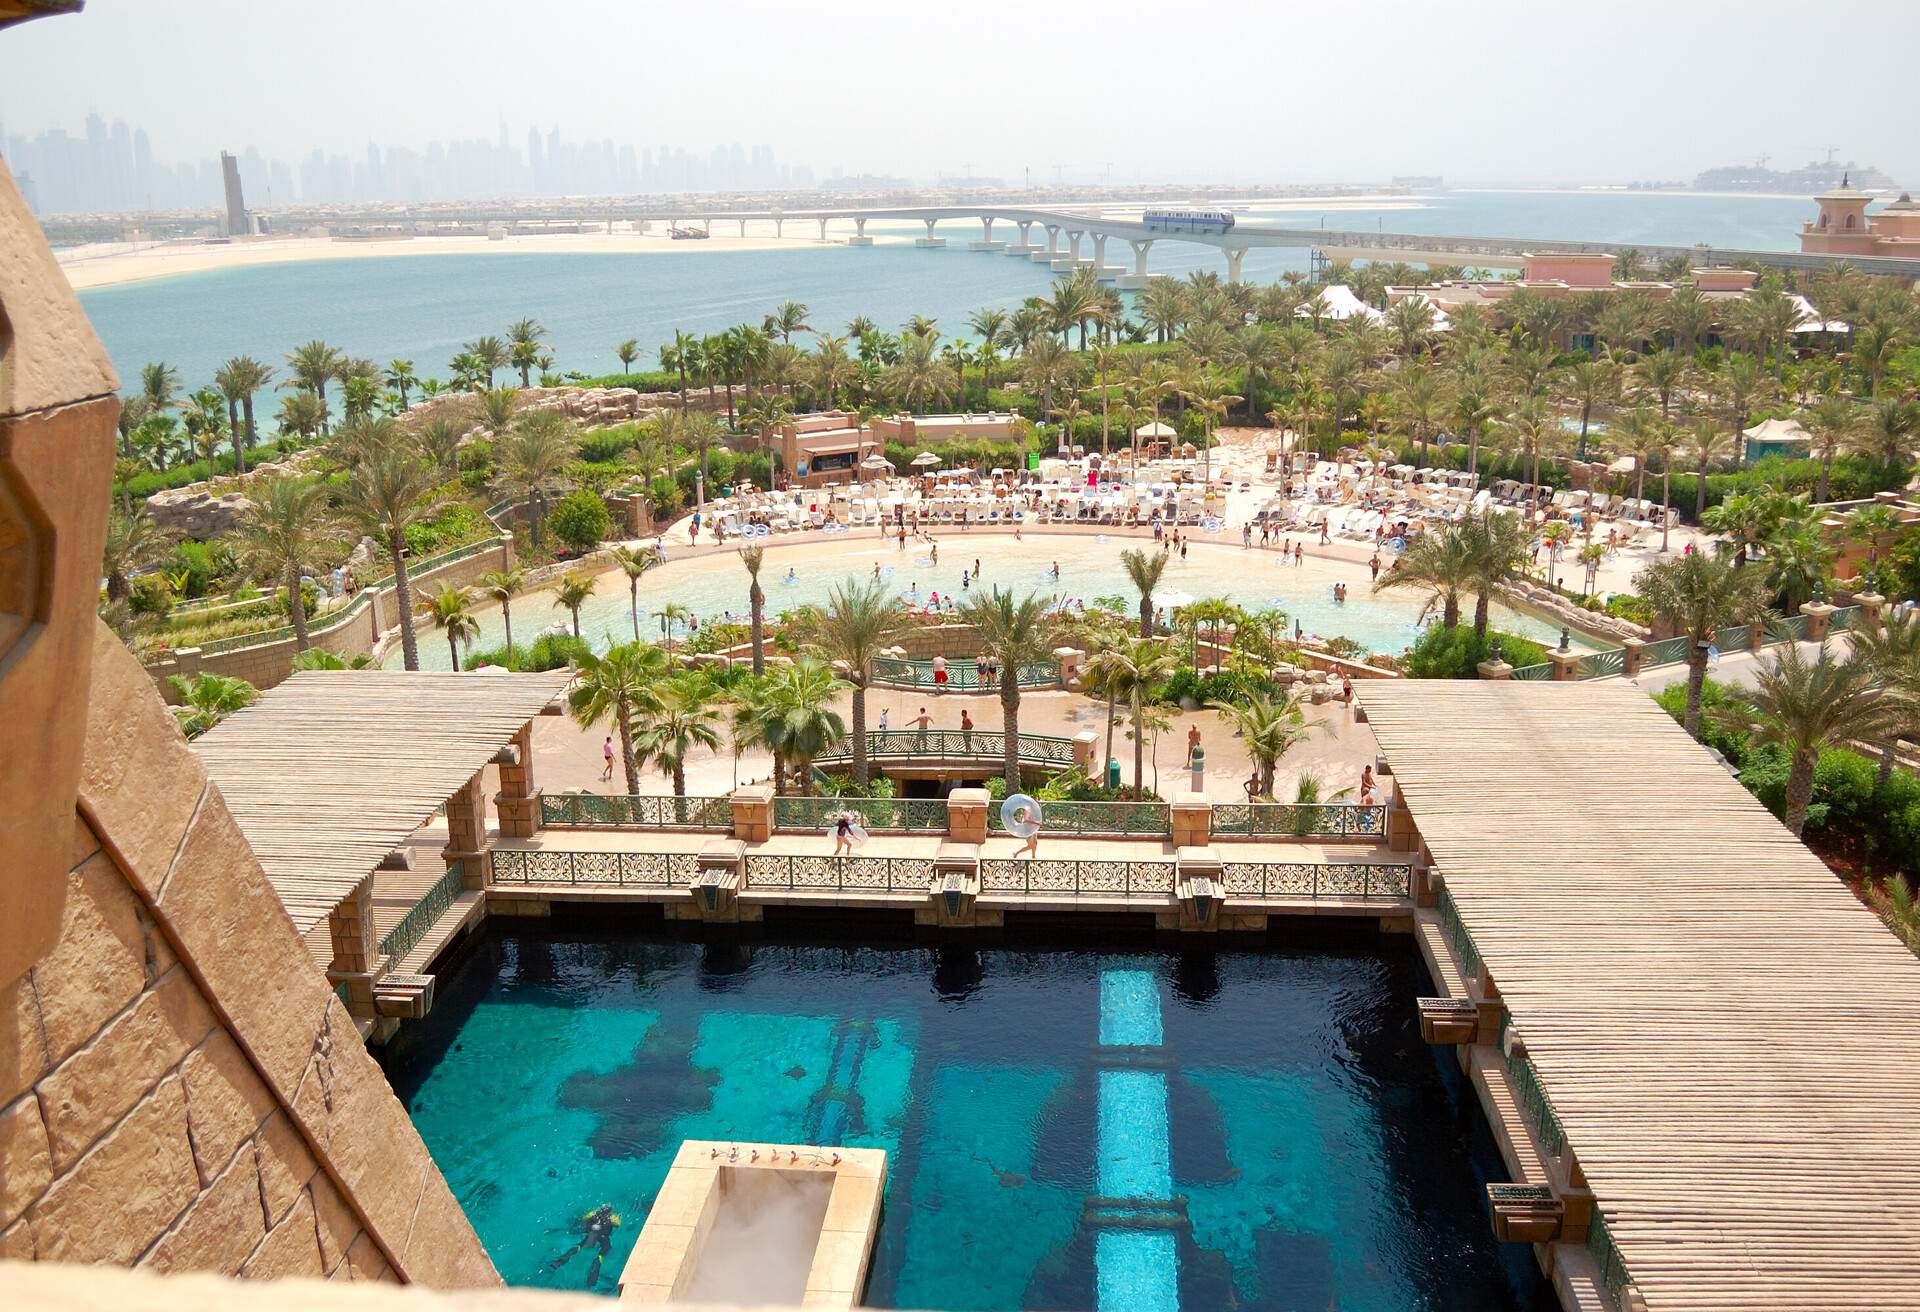 DEST_UAE_DUBAI_ATLANTIS-THE-PALM-HOTEL_WATERPARK_GettyImages